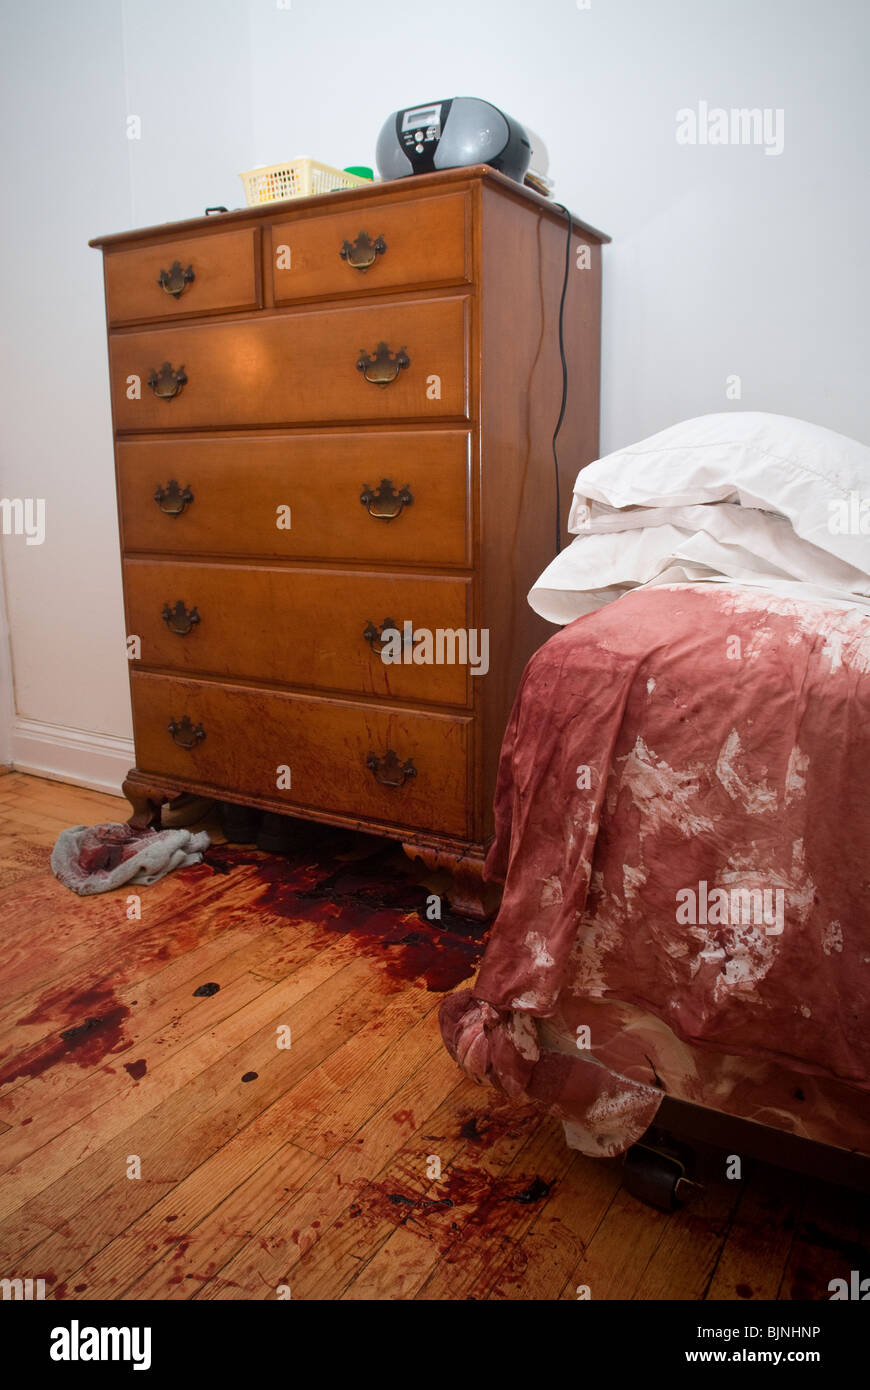 Blut befleckt Bett und Boden werden nach einem schrecklichen Unfall in einer Wohnung in New York gesehen. Stockfoto